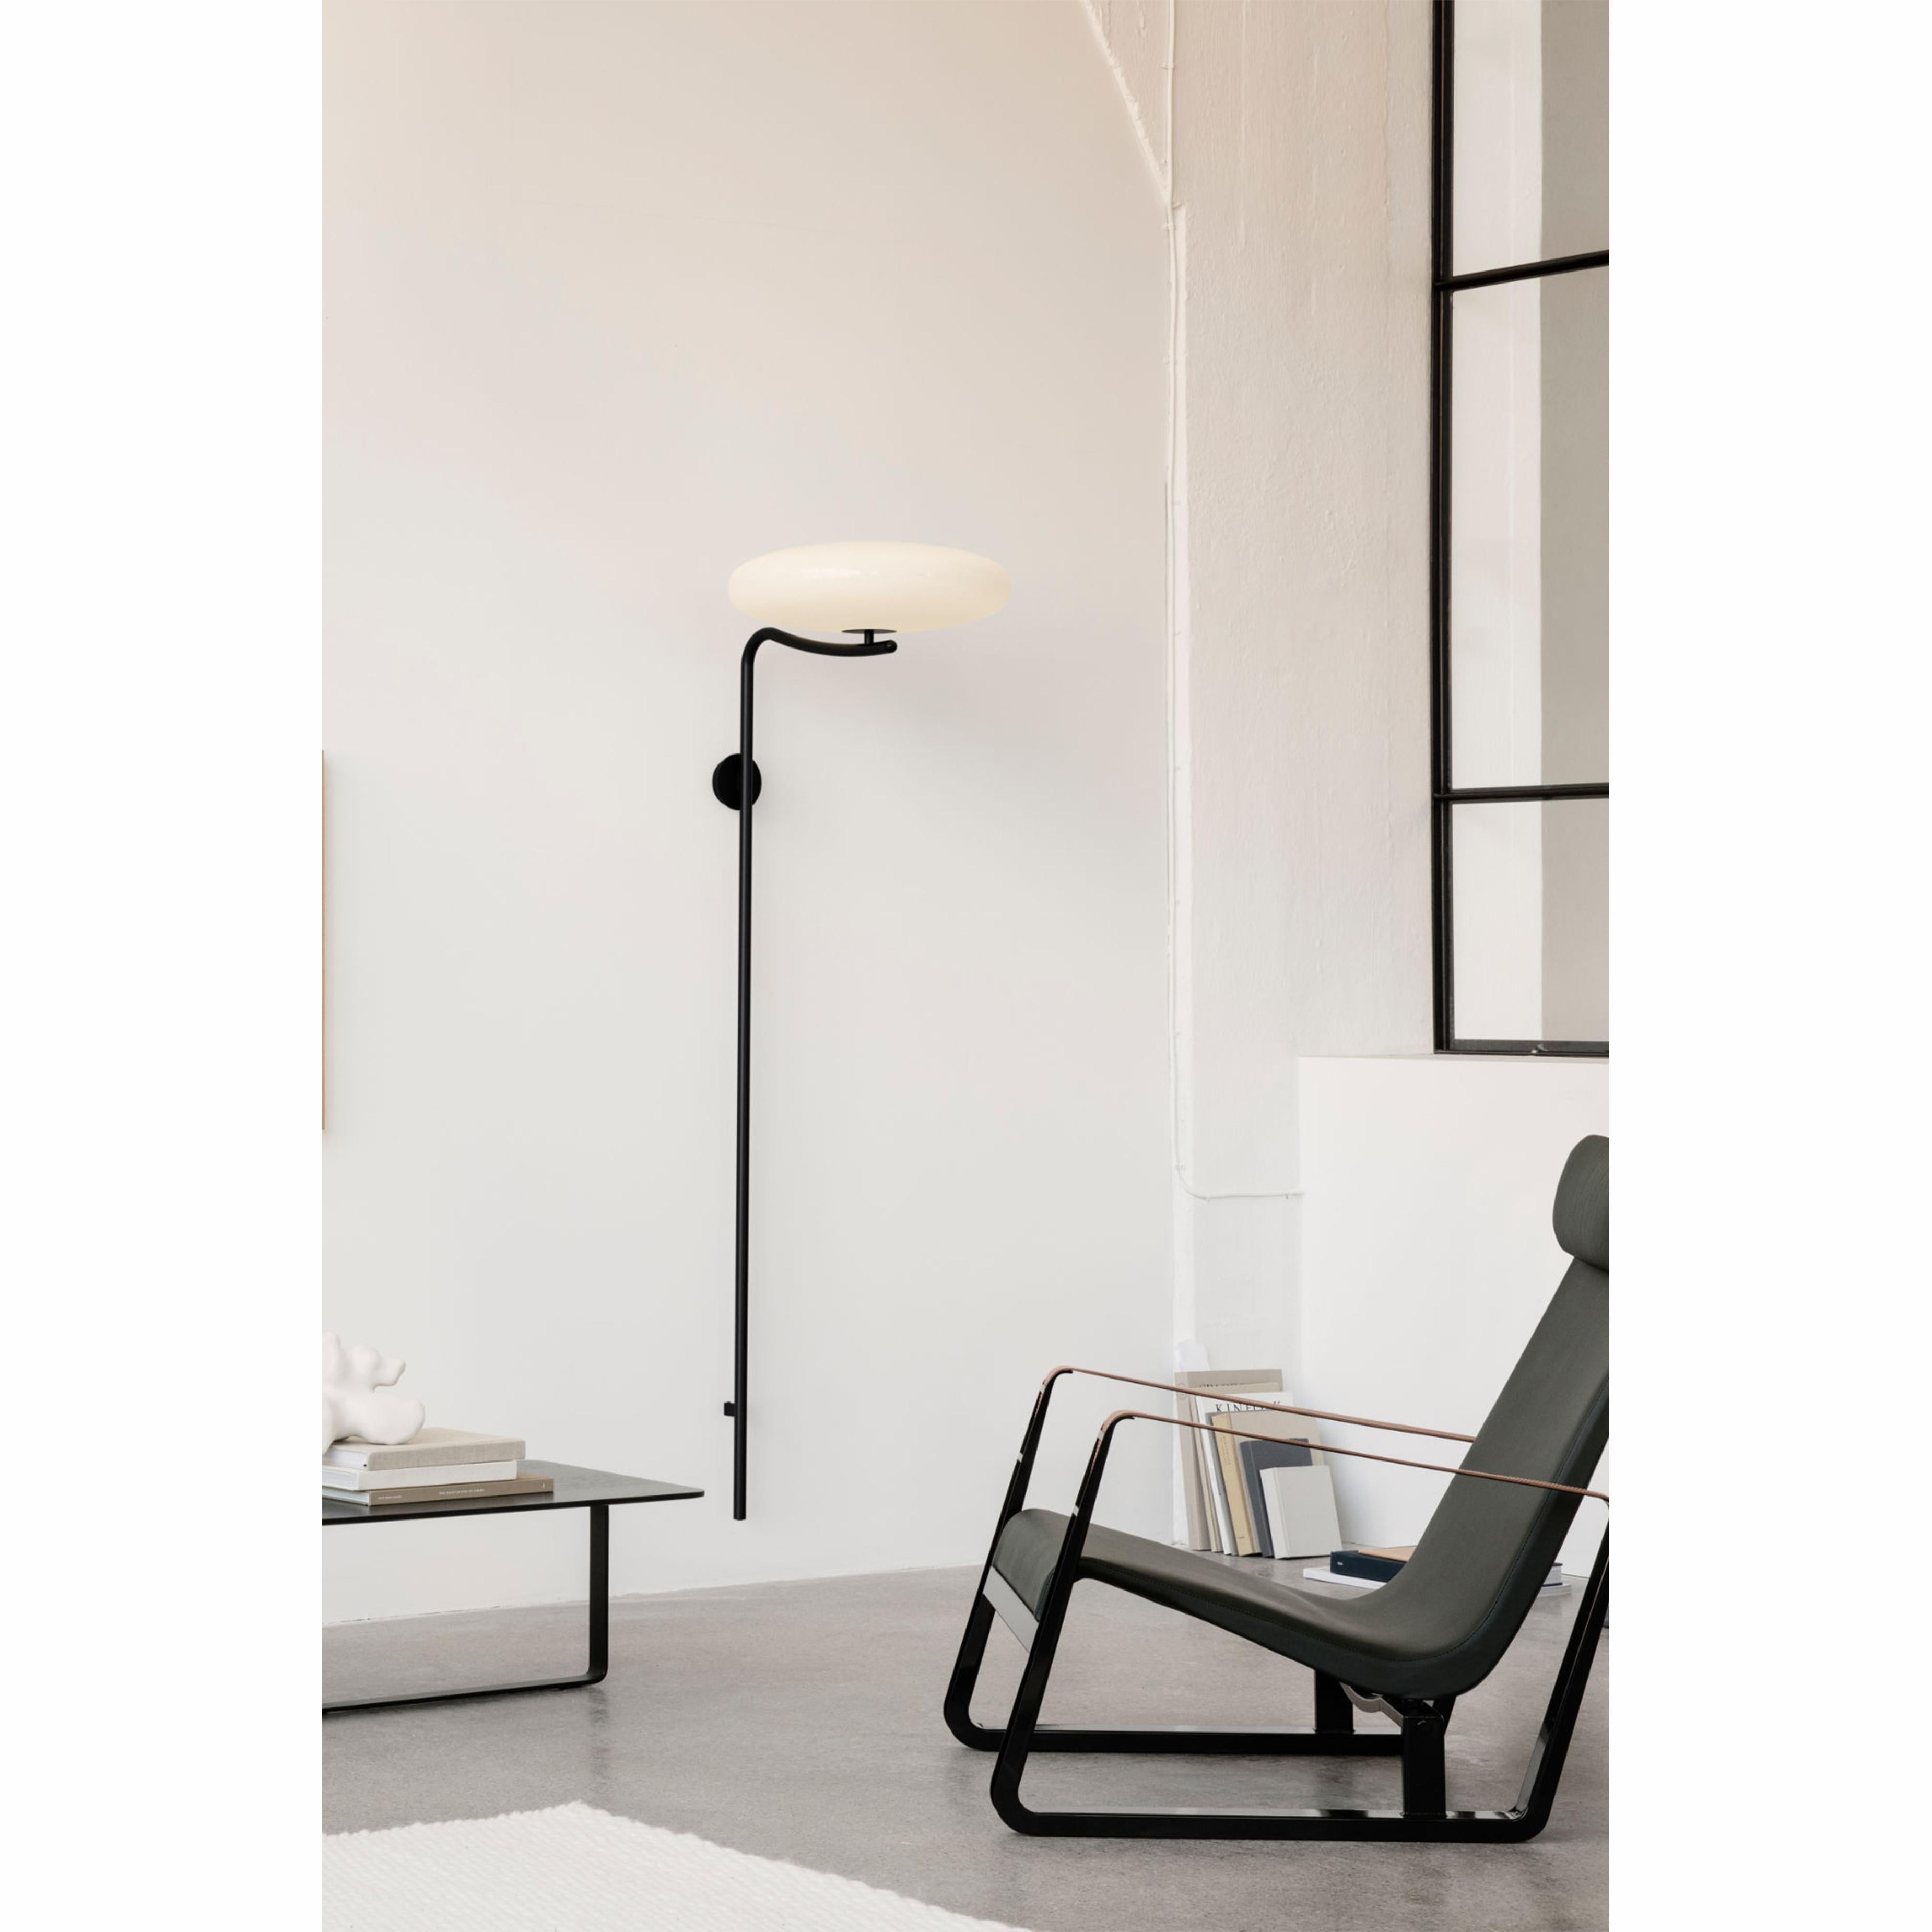 Gino Sarfatti Wall Lamp Model 2065 White Diffuser, Black Hardware 1